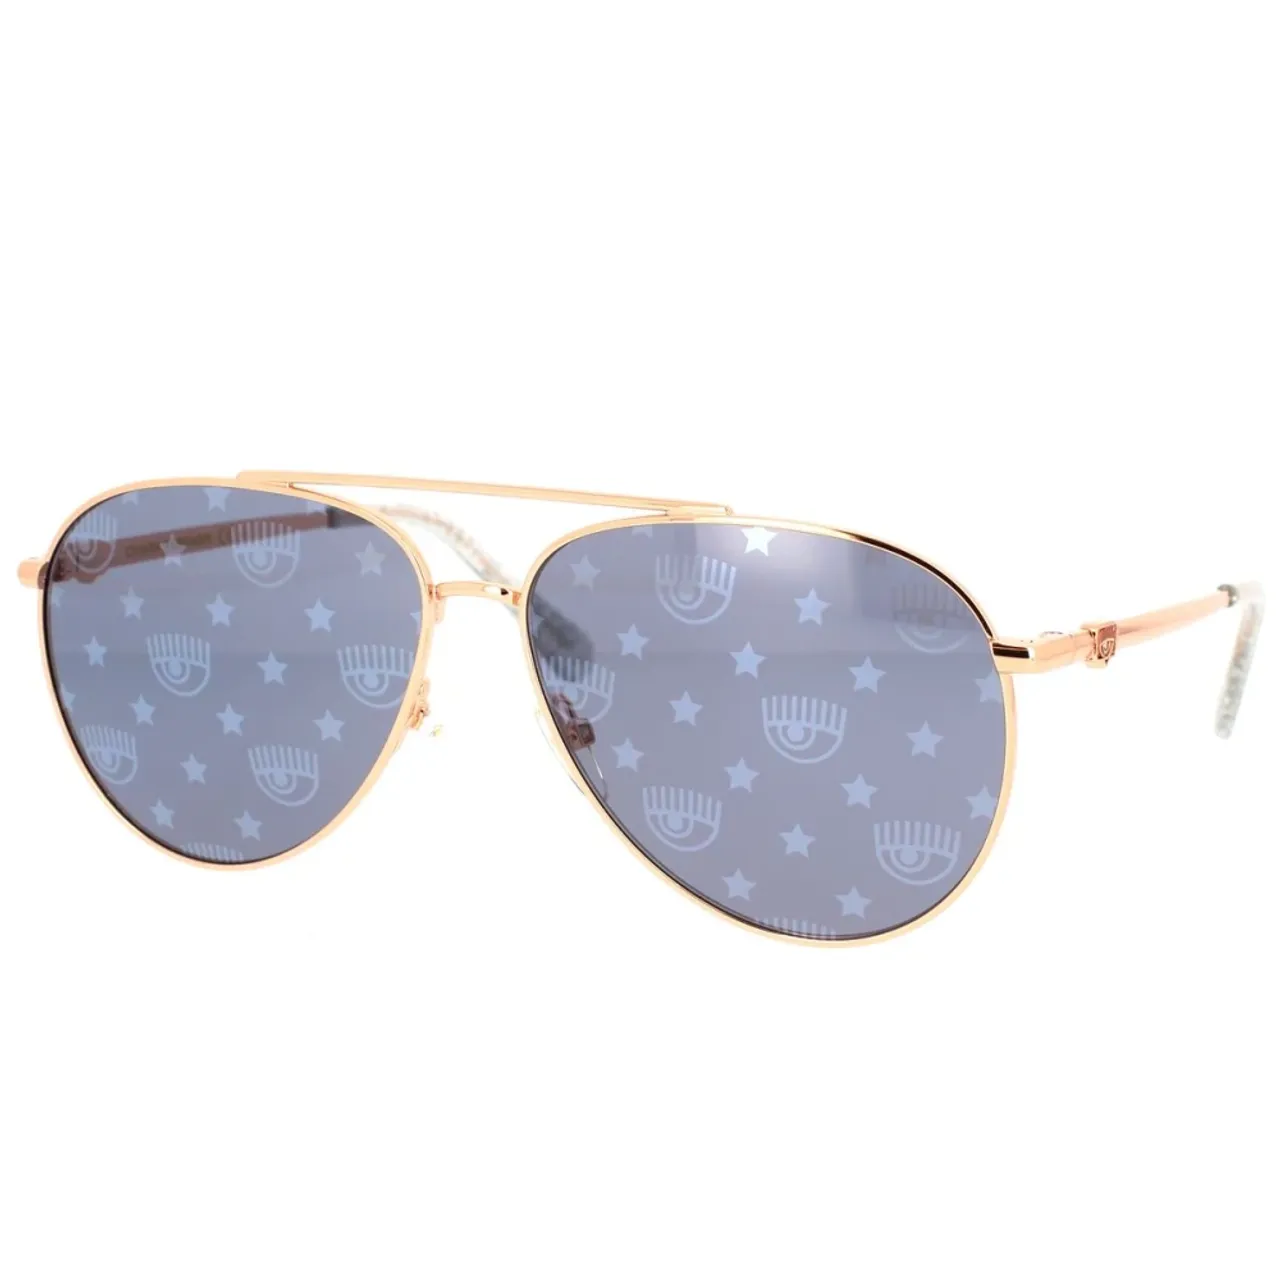 Chic Aviator Sonnenbrille mit Eyelike Logo und Sternendetails Chiara Ferragni Collection